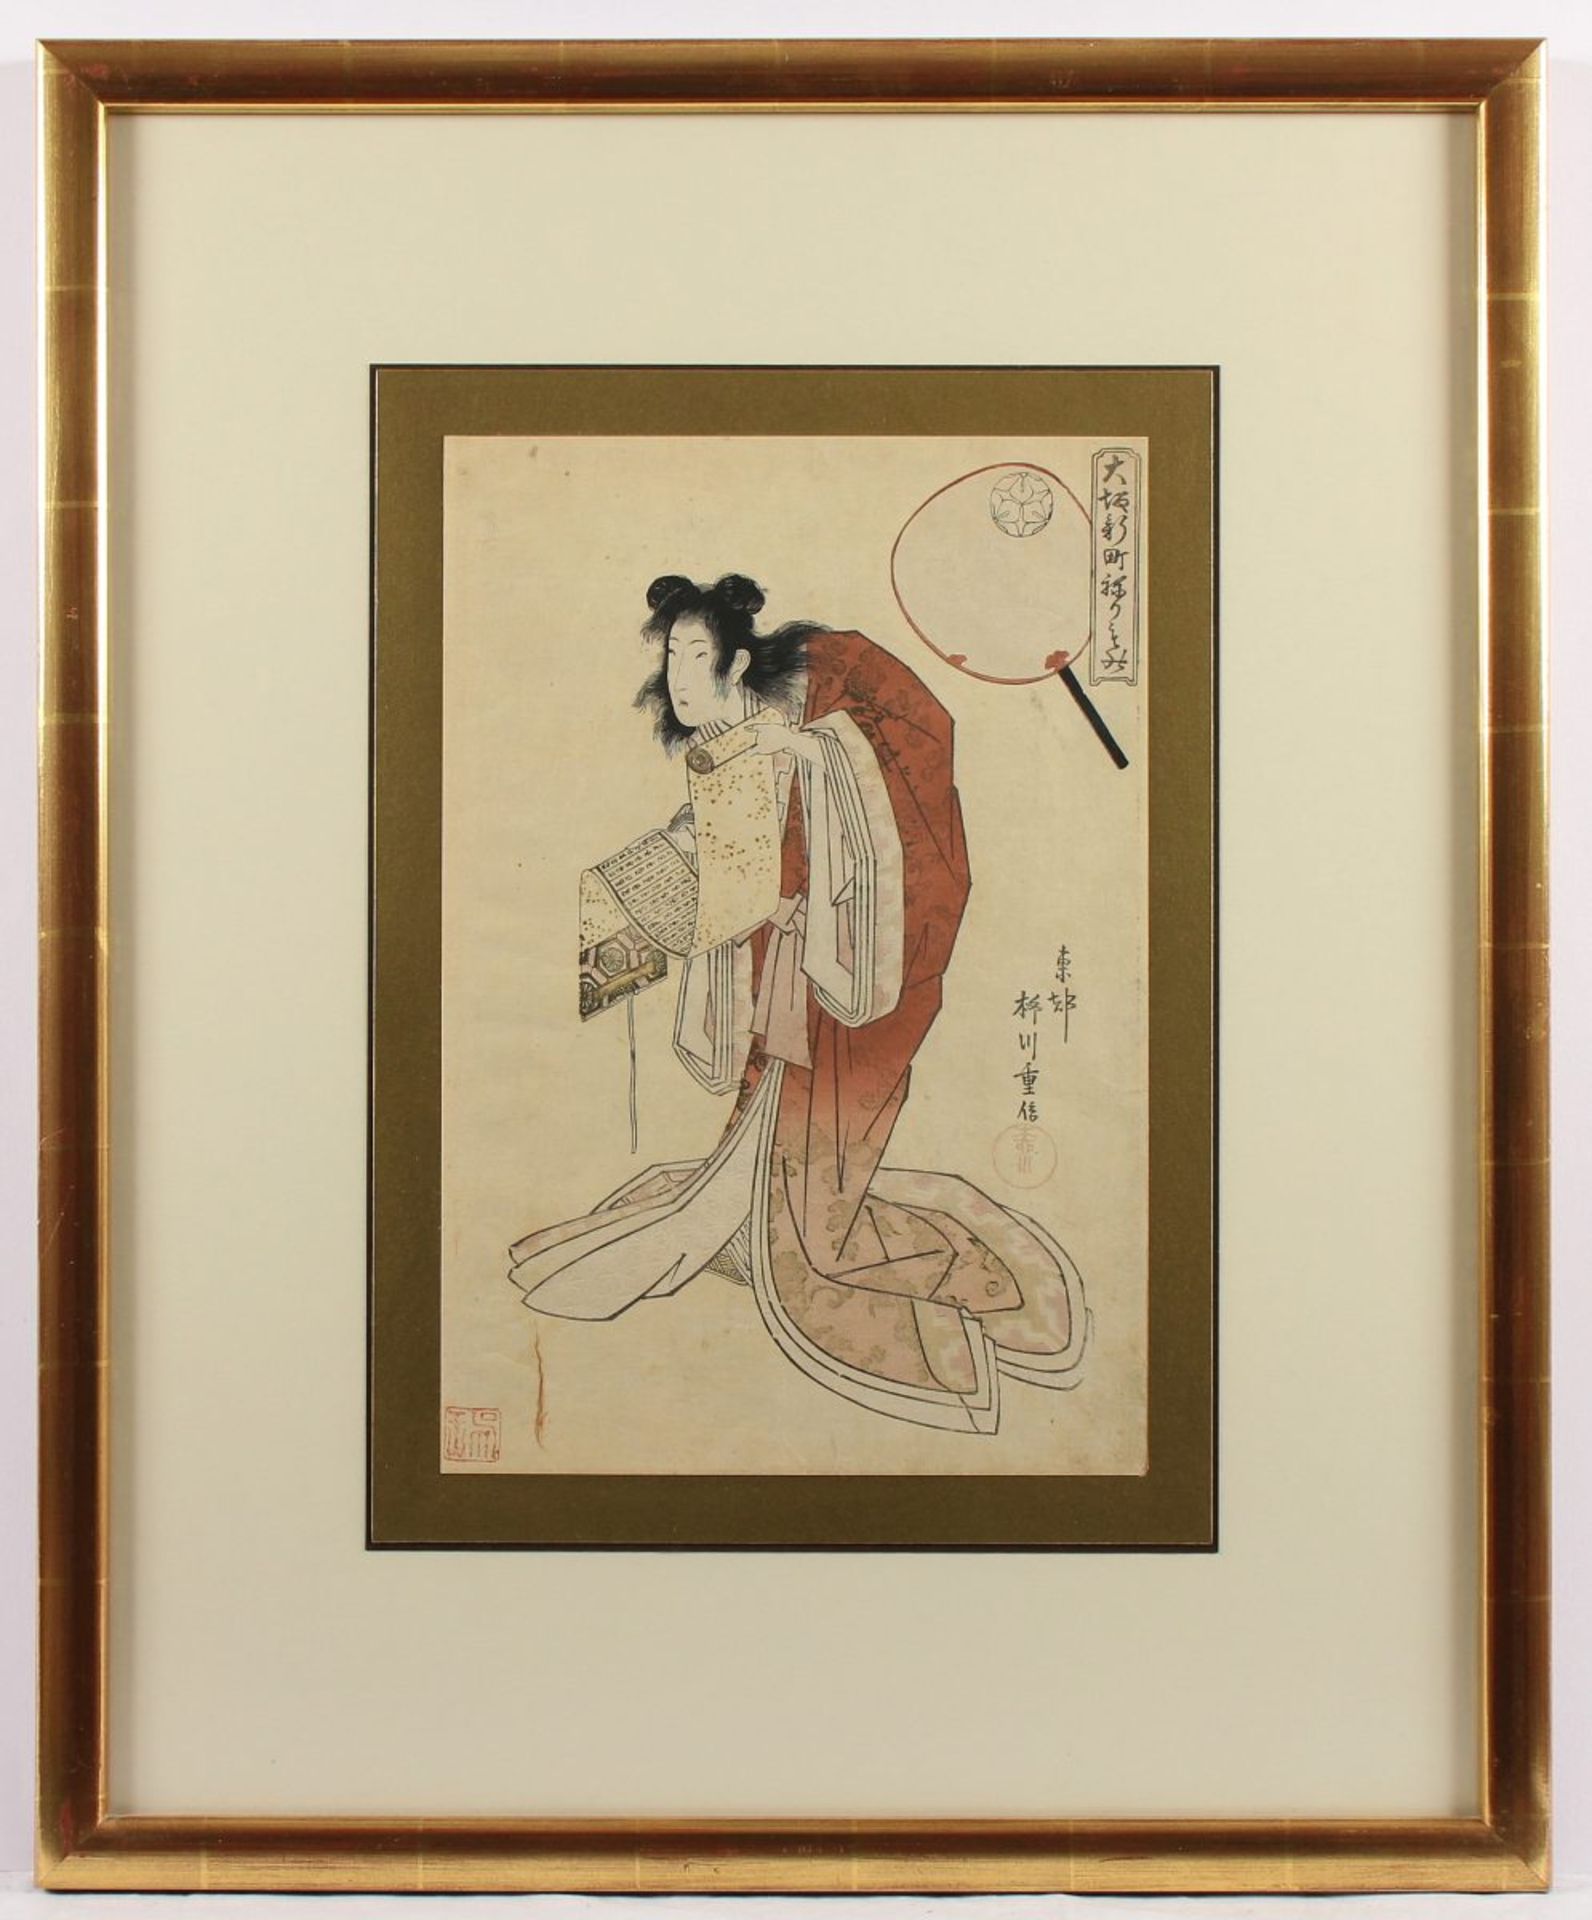 FARBHOLZSCHNITT, Kikugawa EIZAN (1787-1867), "Schauspieler", unter Glas gerahmt, JAPAN, um 1820 - Bild 2 aus 2